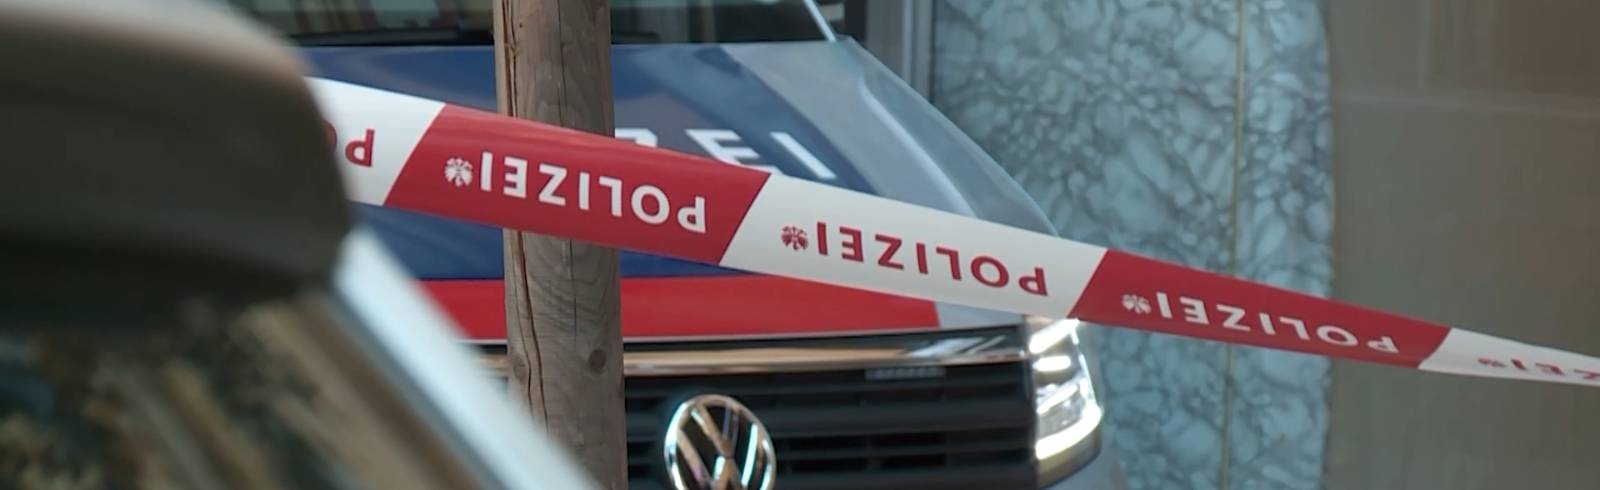 Bank in Wien-Leopoldstadt überfallen